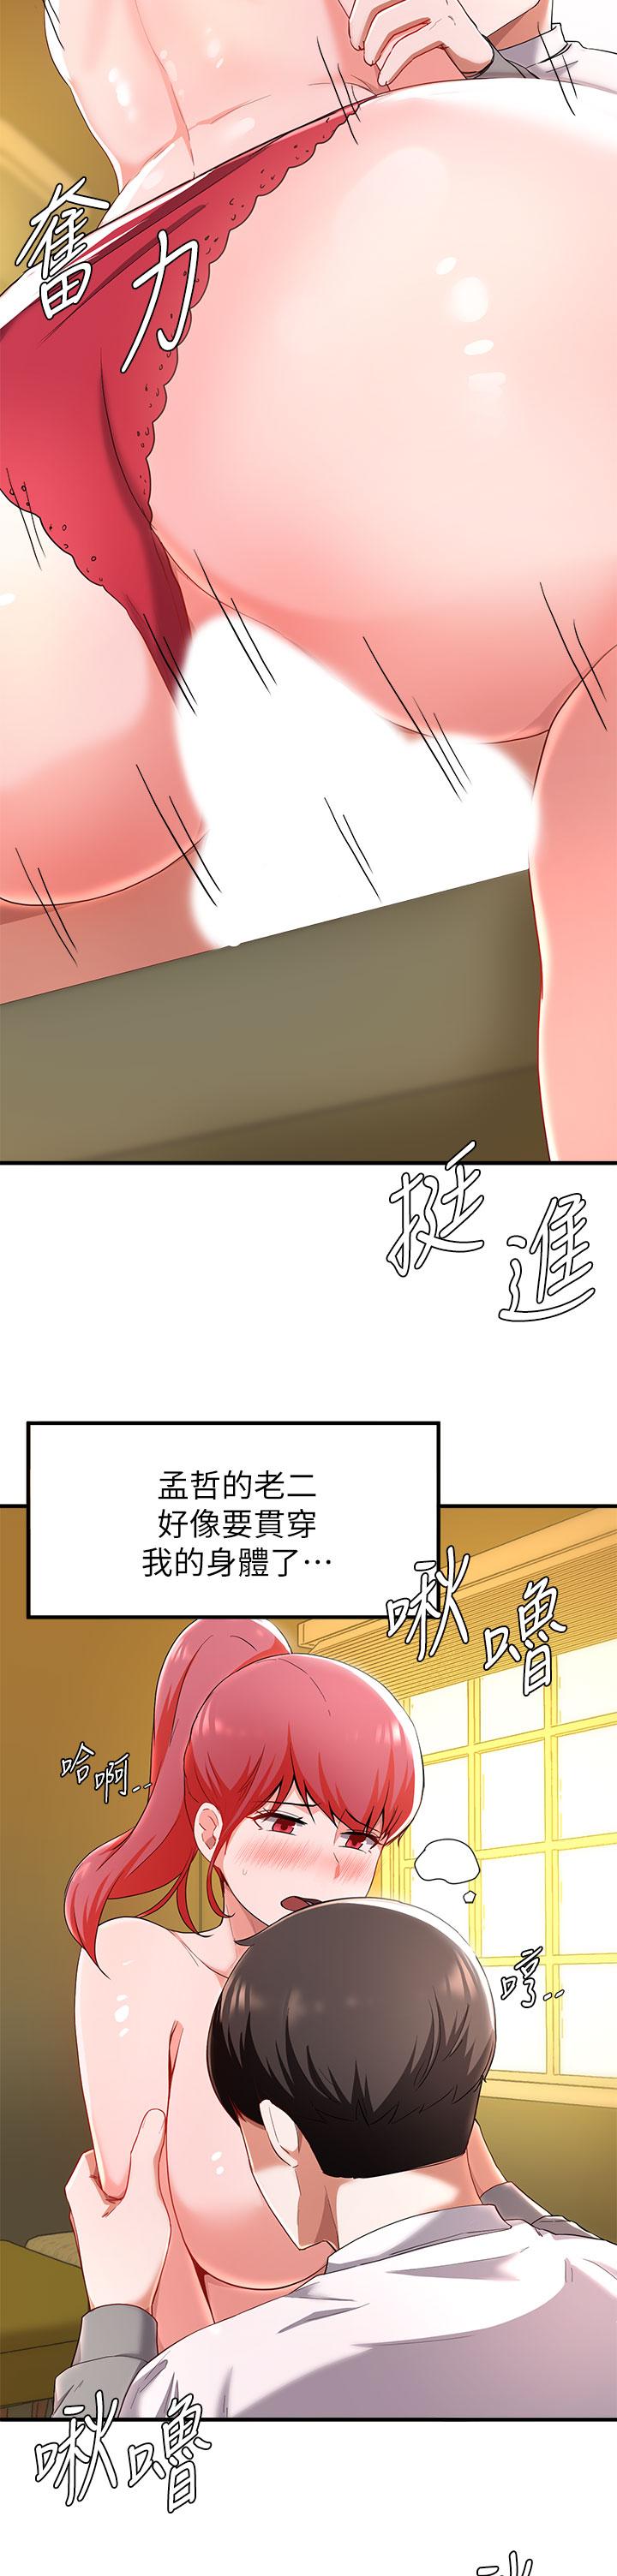 《废柴逃脱》漫画 第21话-充斥淫乱氛围的美容院